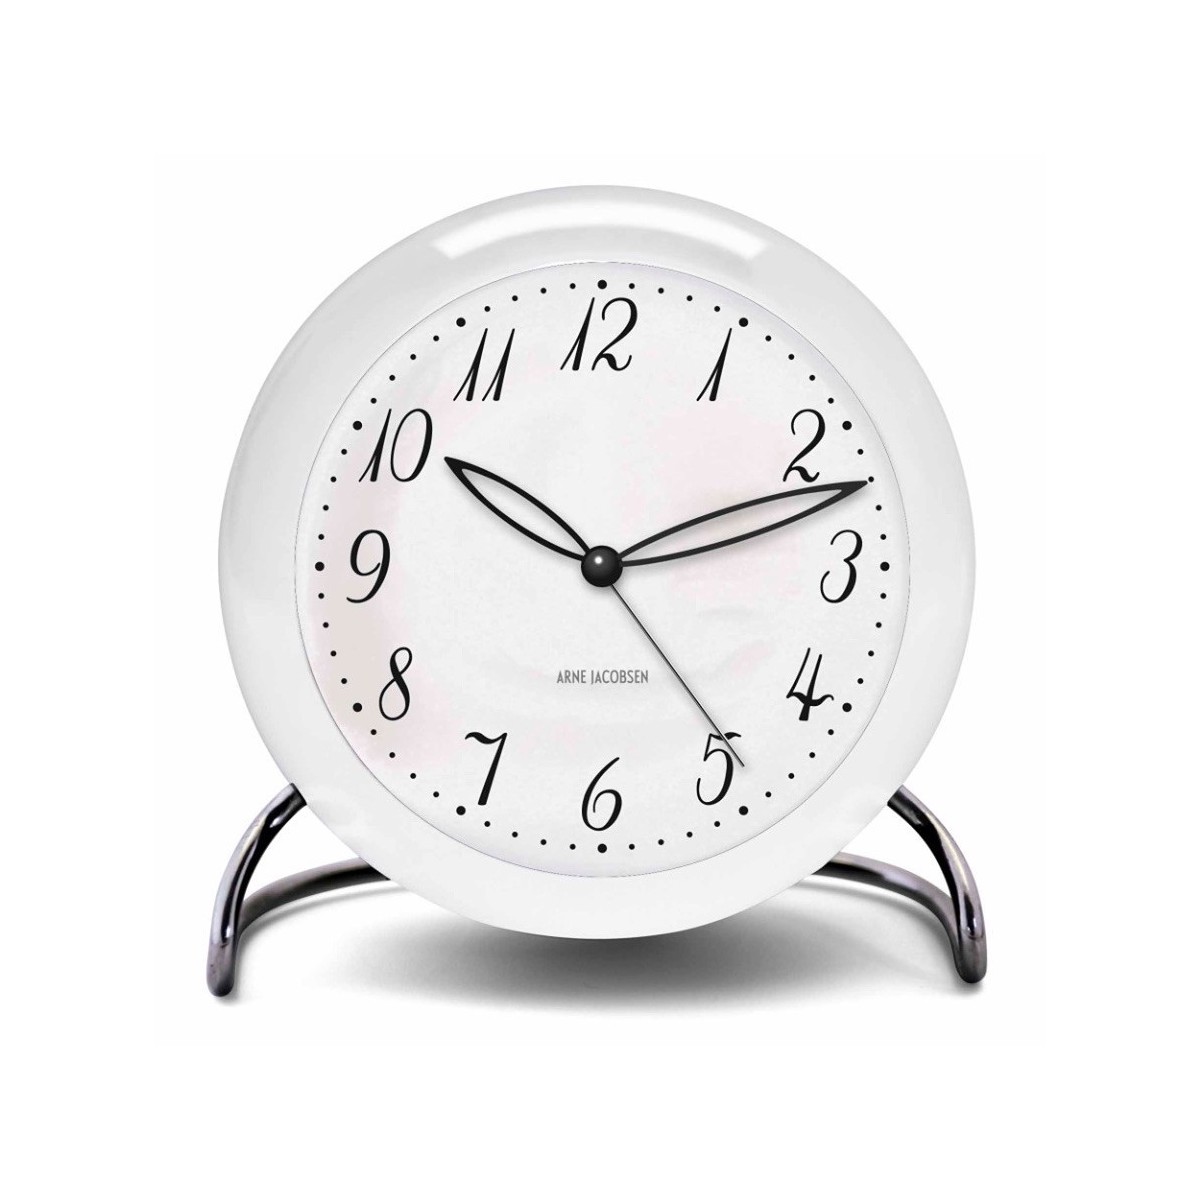 AJ LK alarm clock - white - Arne Jacobsen